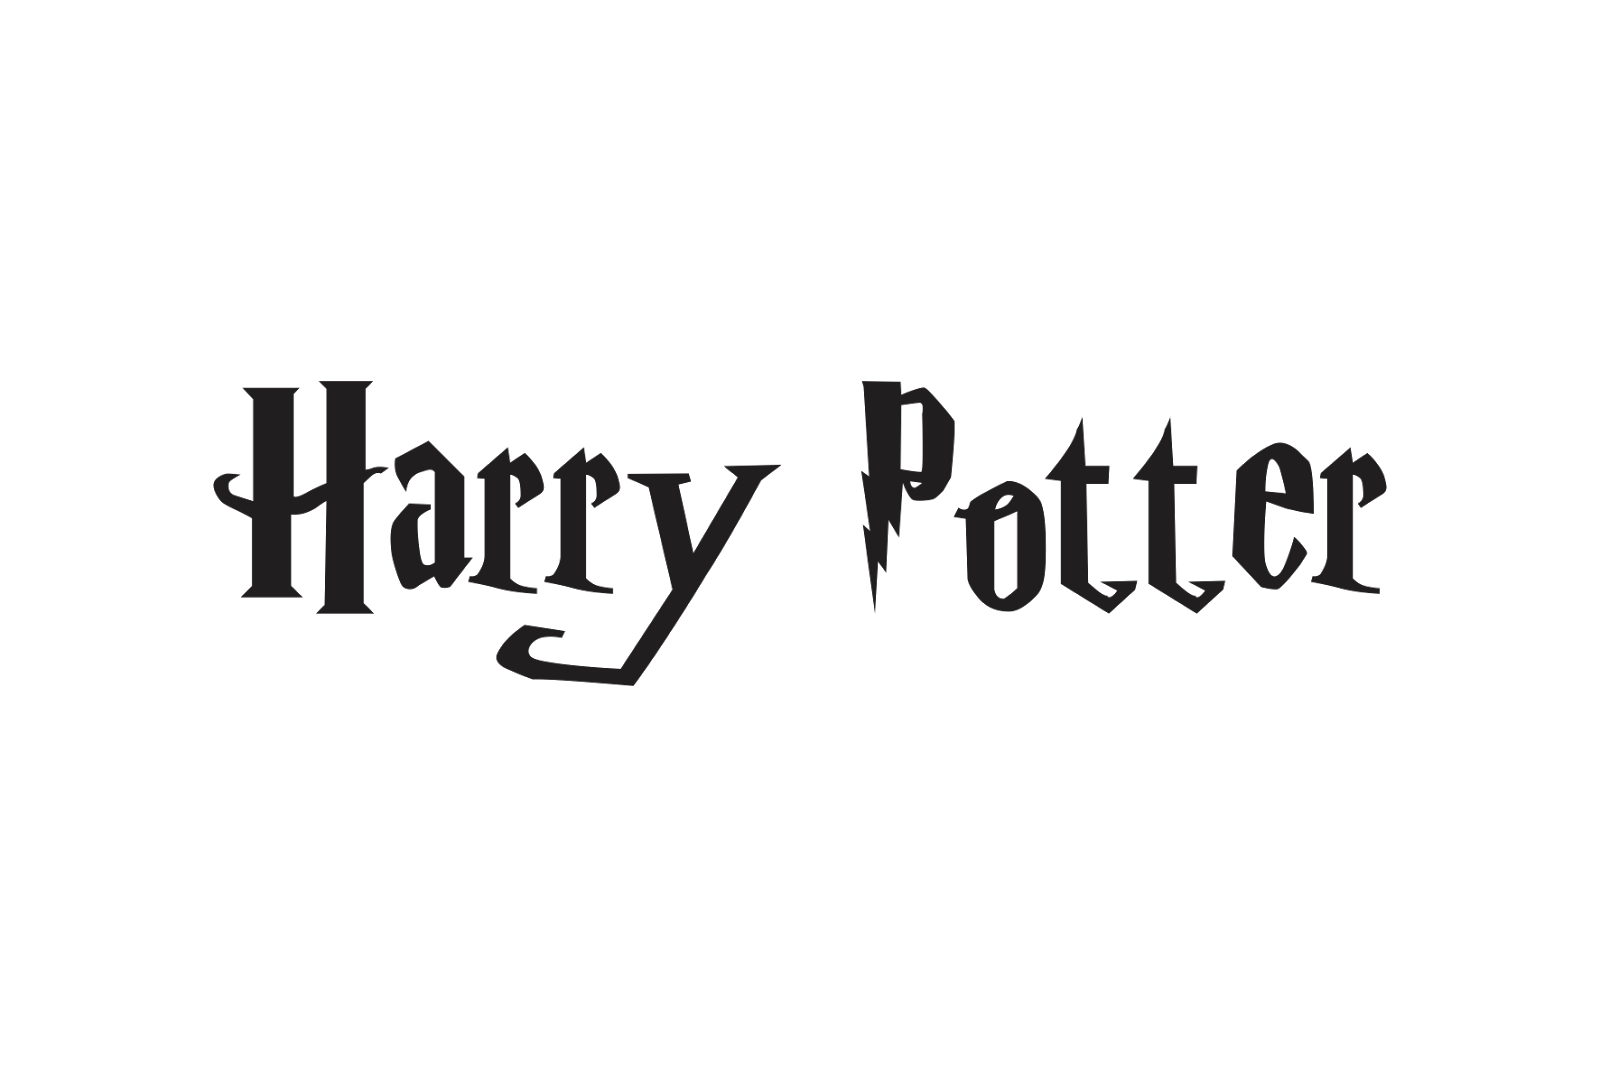 Download Harry Potter Logo